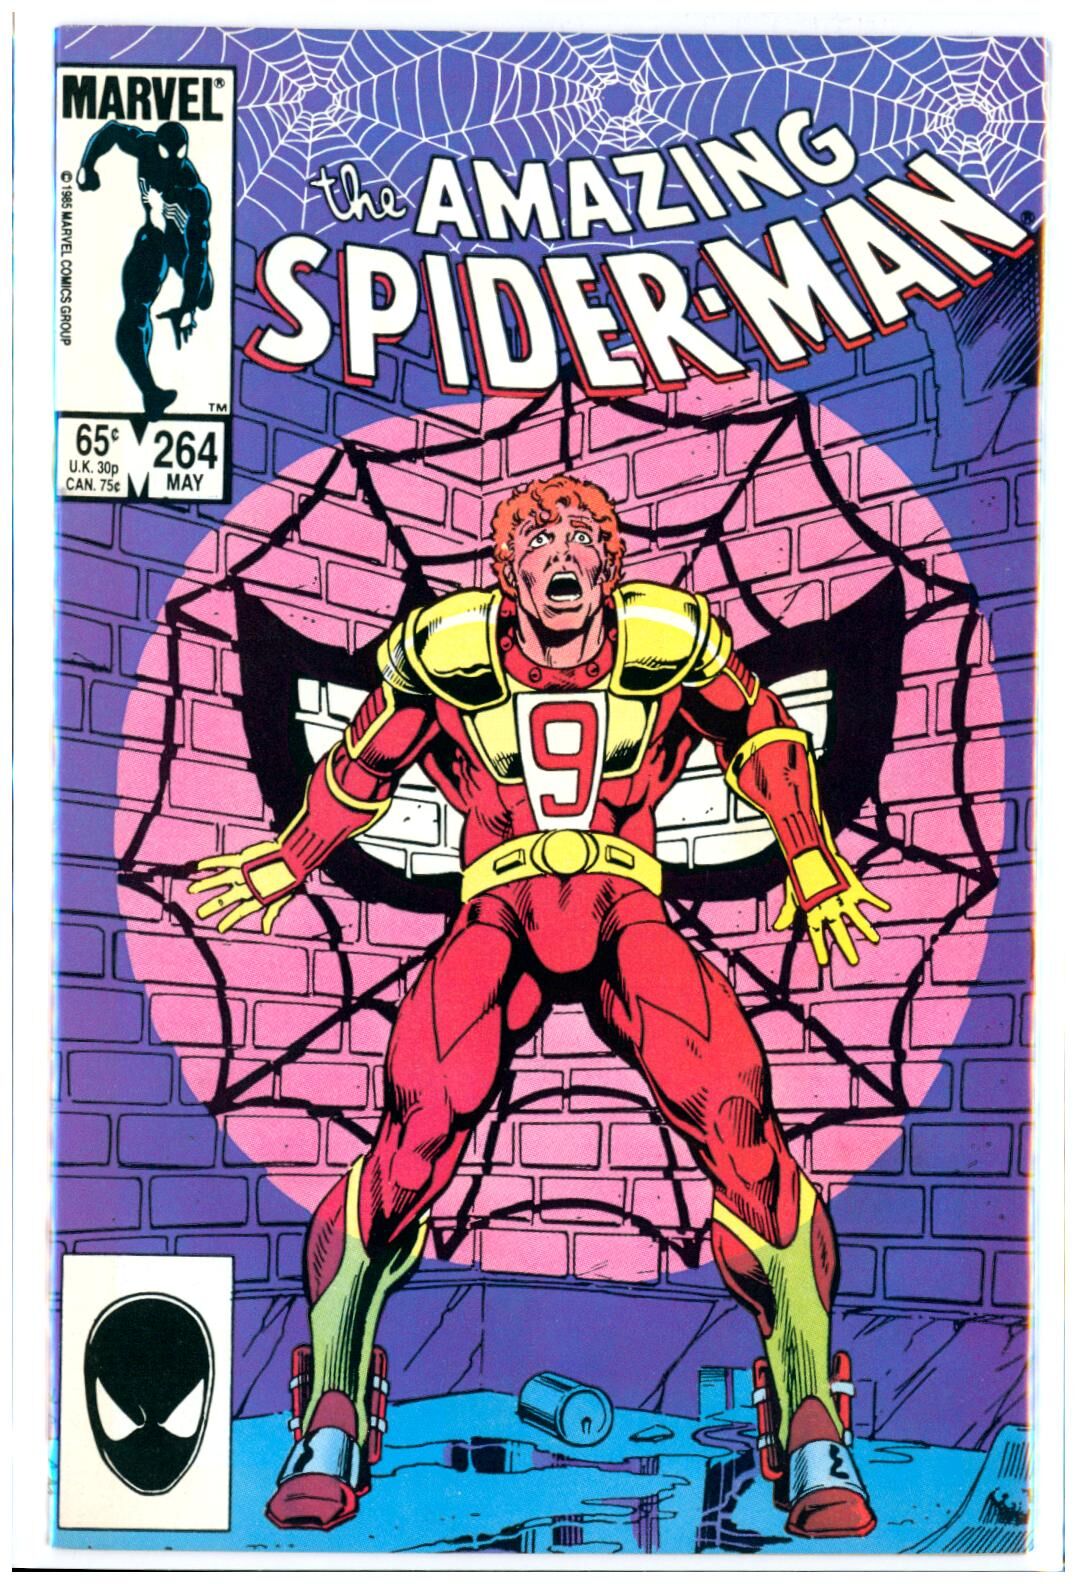 Amazing Spider-Man #264